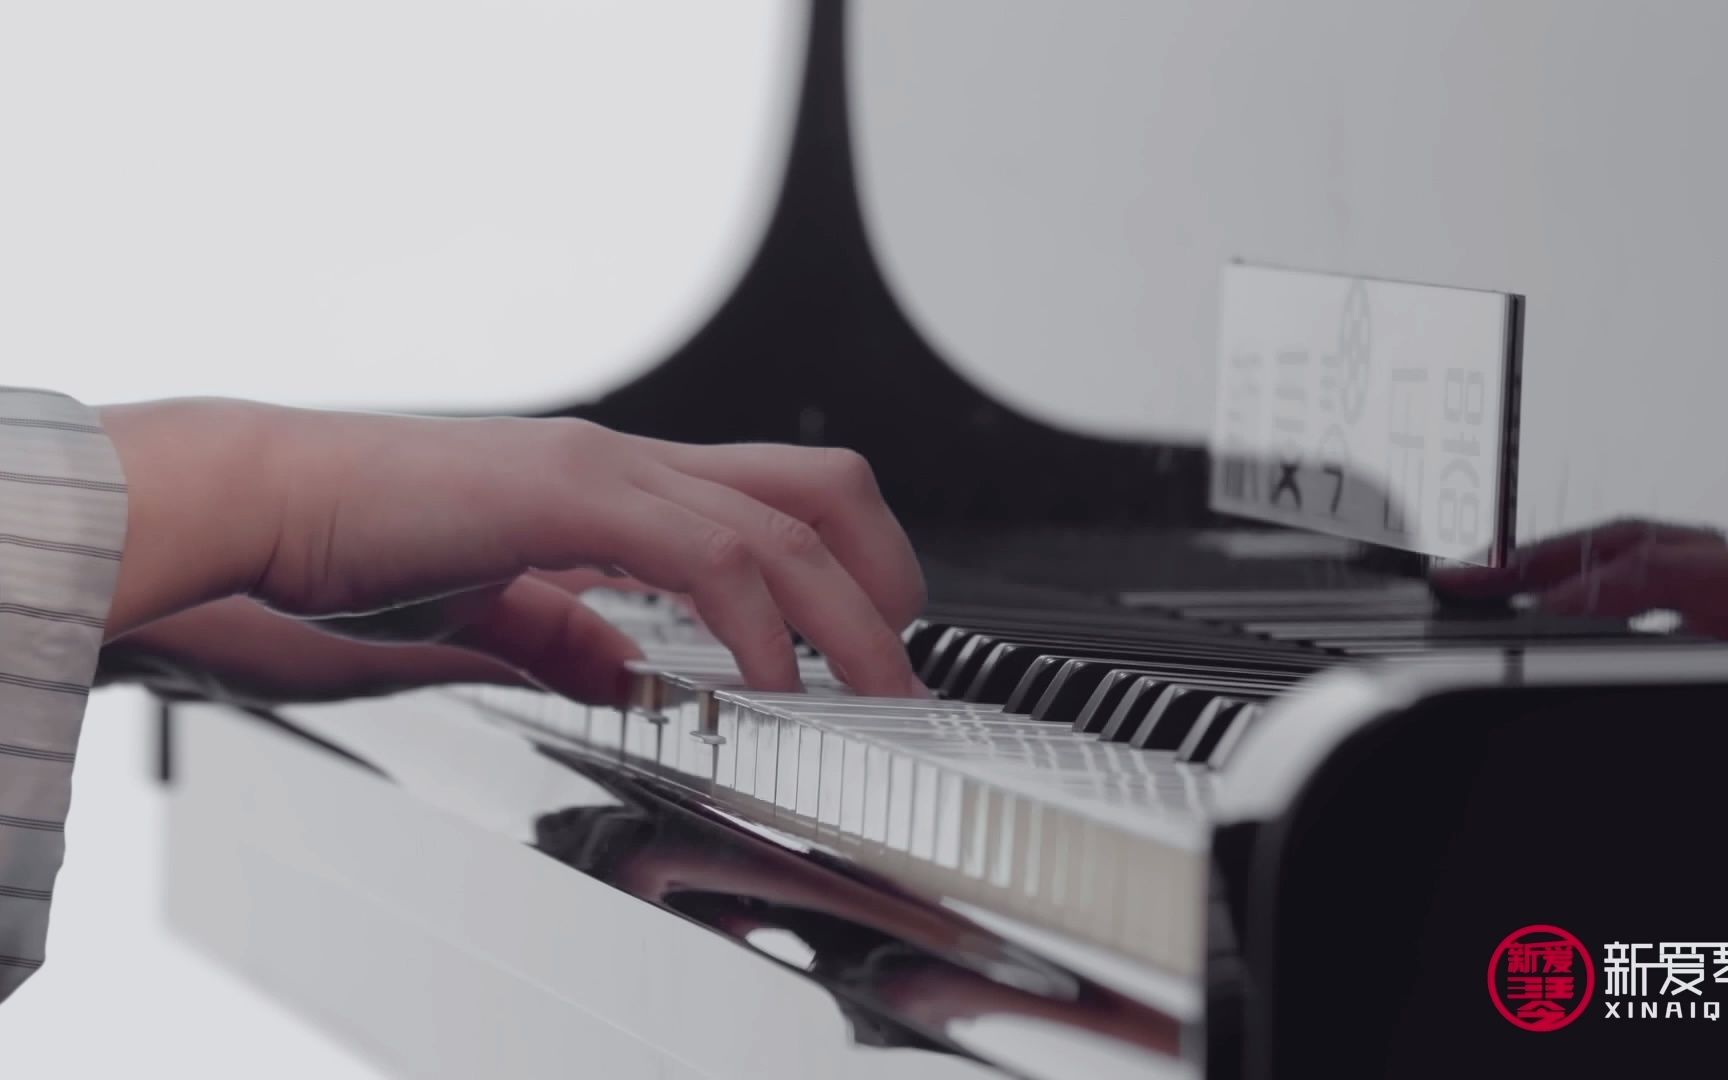 新爱琴 克莱德曼钢琴曲集公益课片段-献给爱丽丝